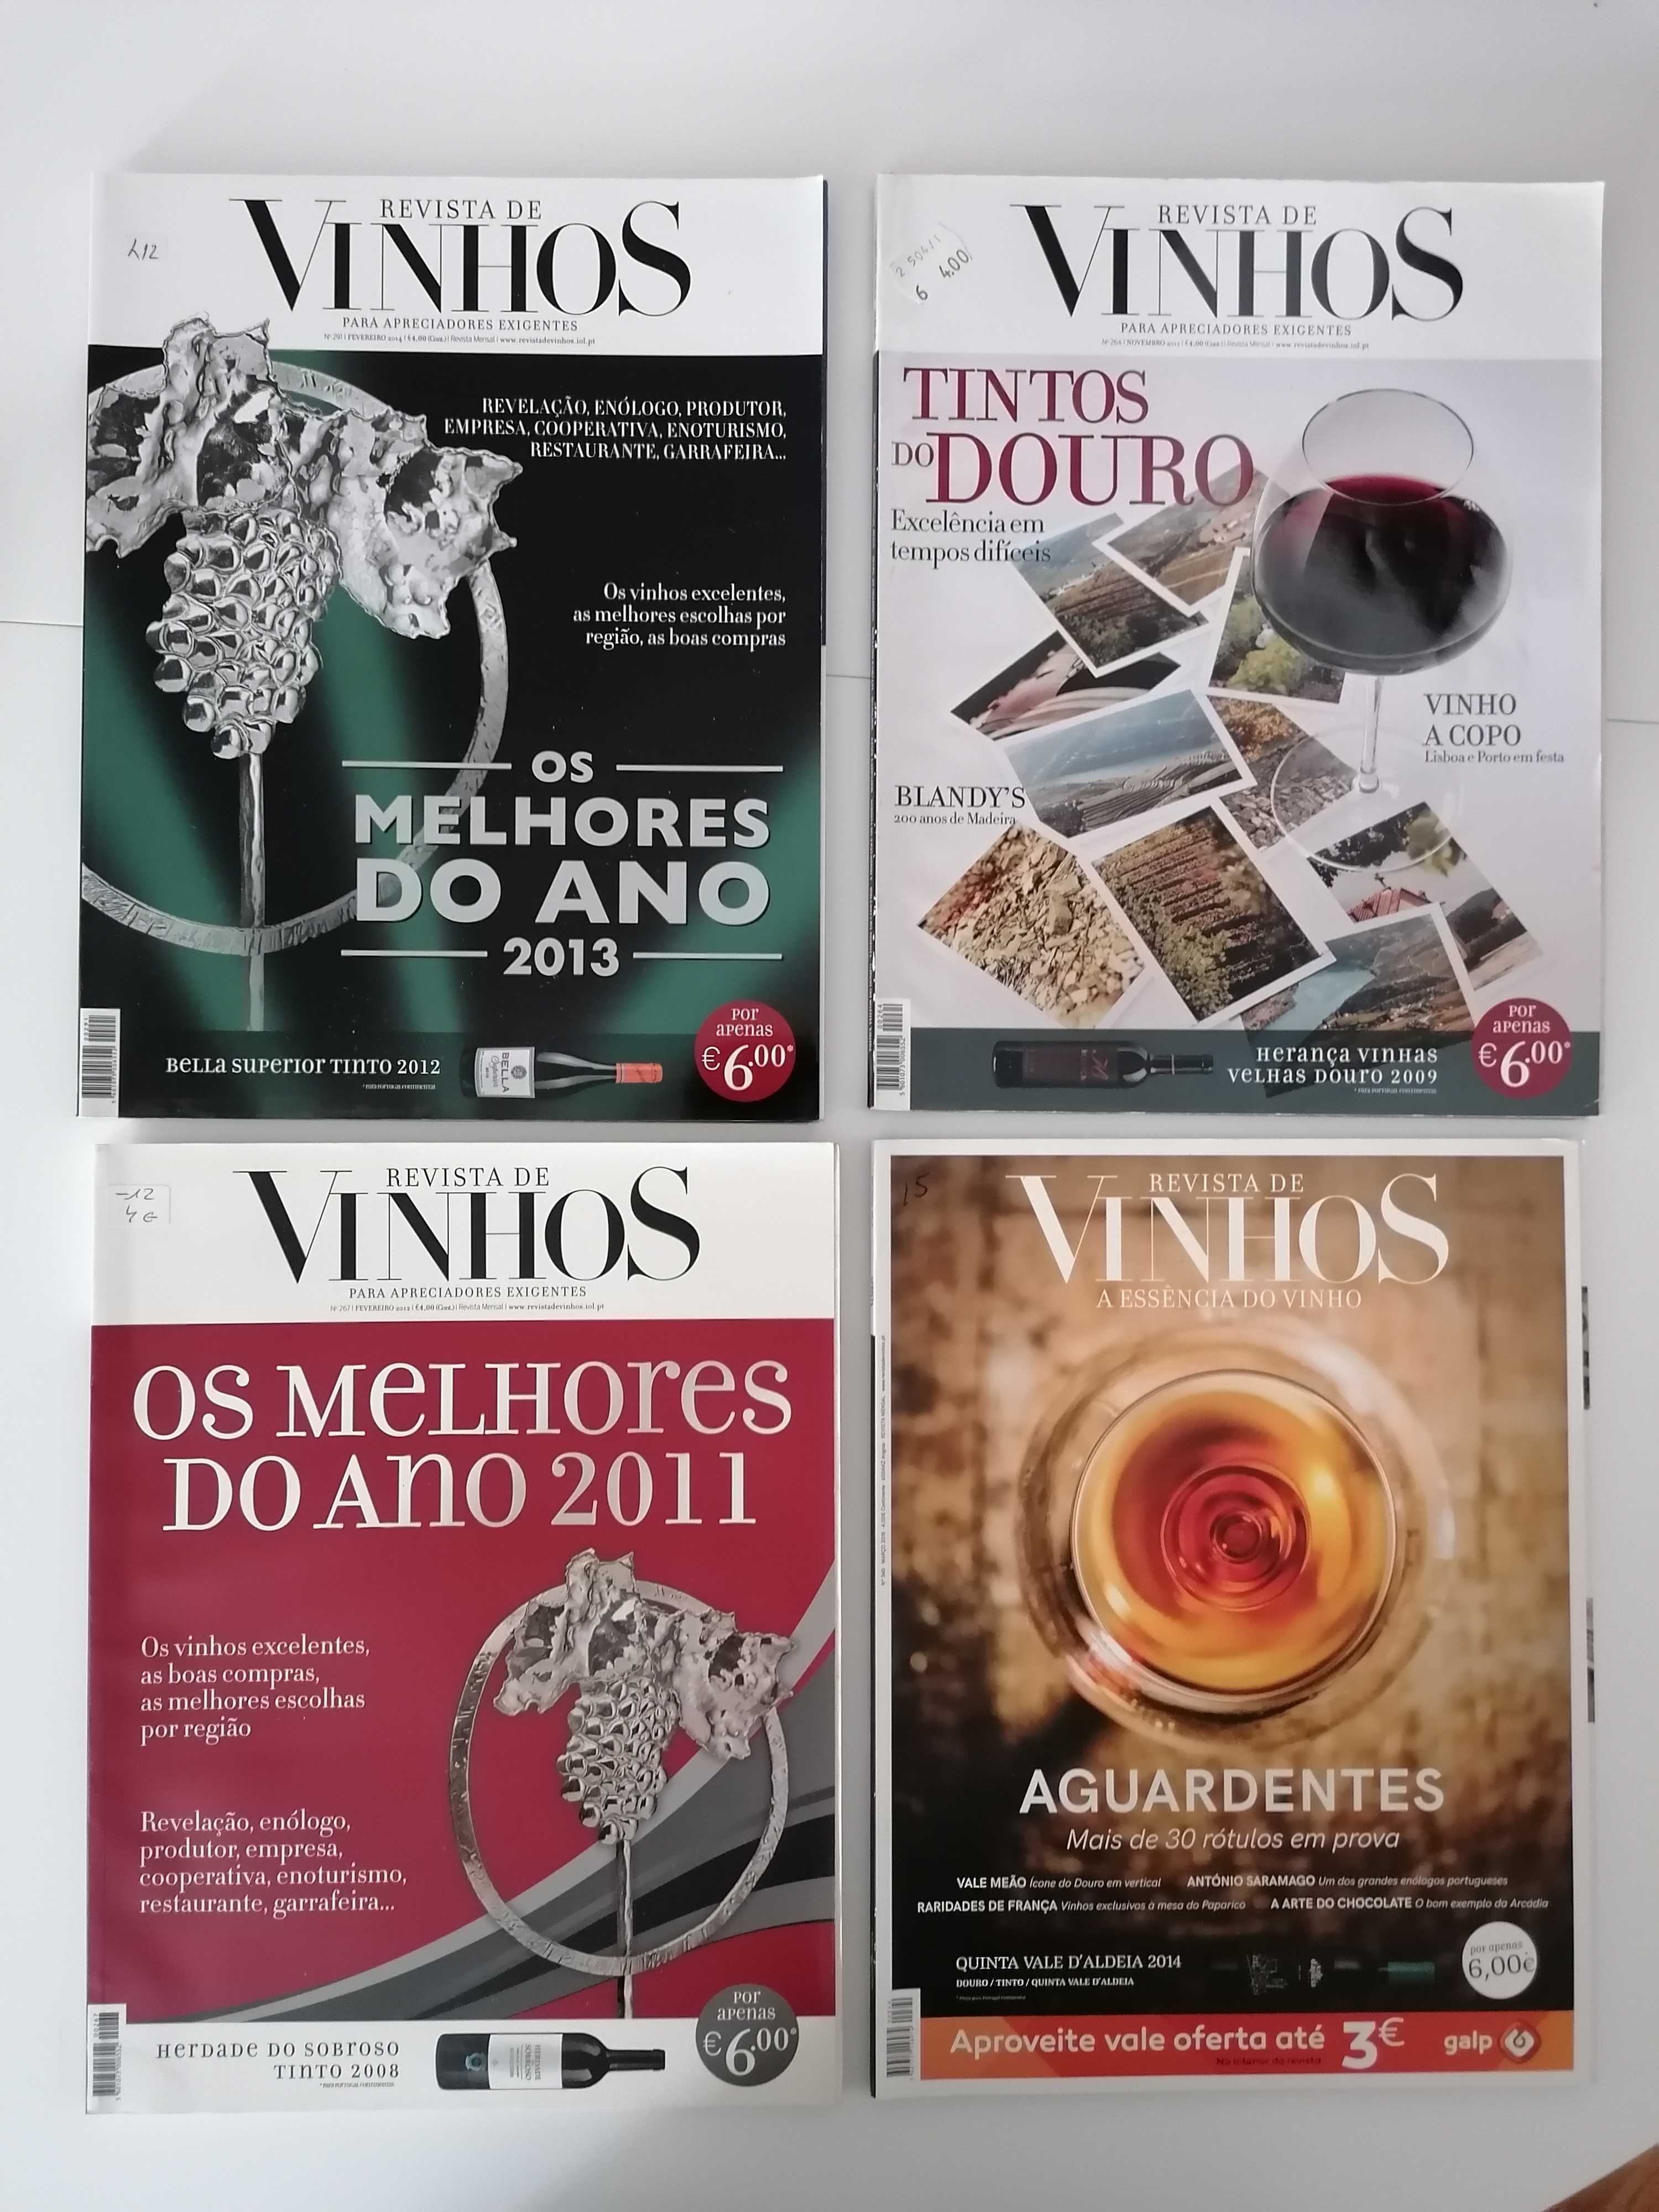 13 Revistas "Revista de Vinhos"